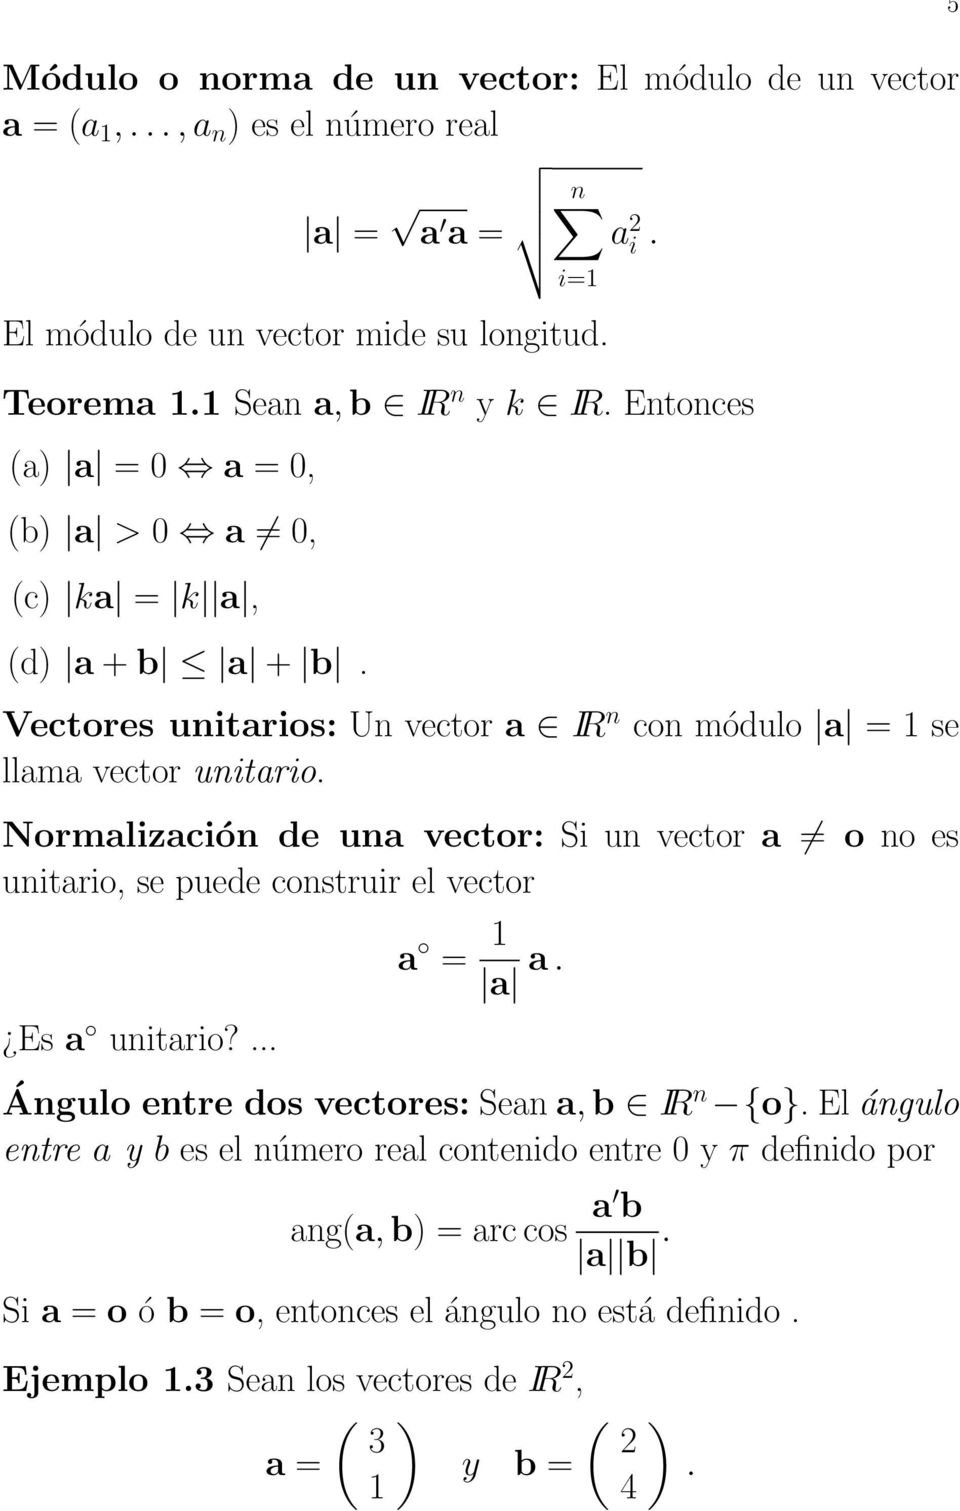 Normalización de una vector: Si un vector a o no es unitario, se puede construir el vector Es a unitario? a = a a. Ángulo entre dos vectores:seana,b IR n {o}.